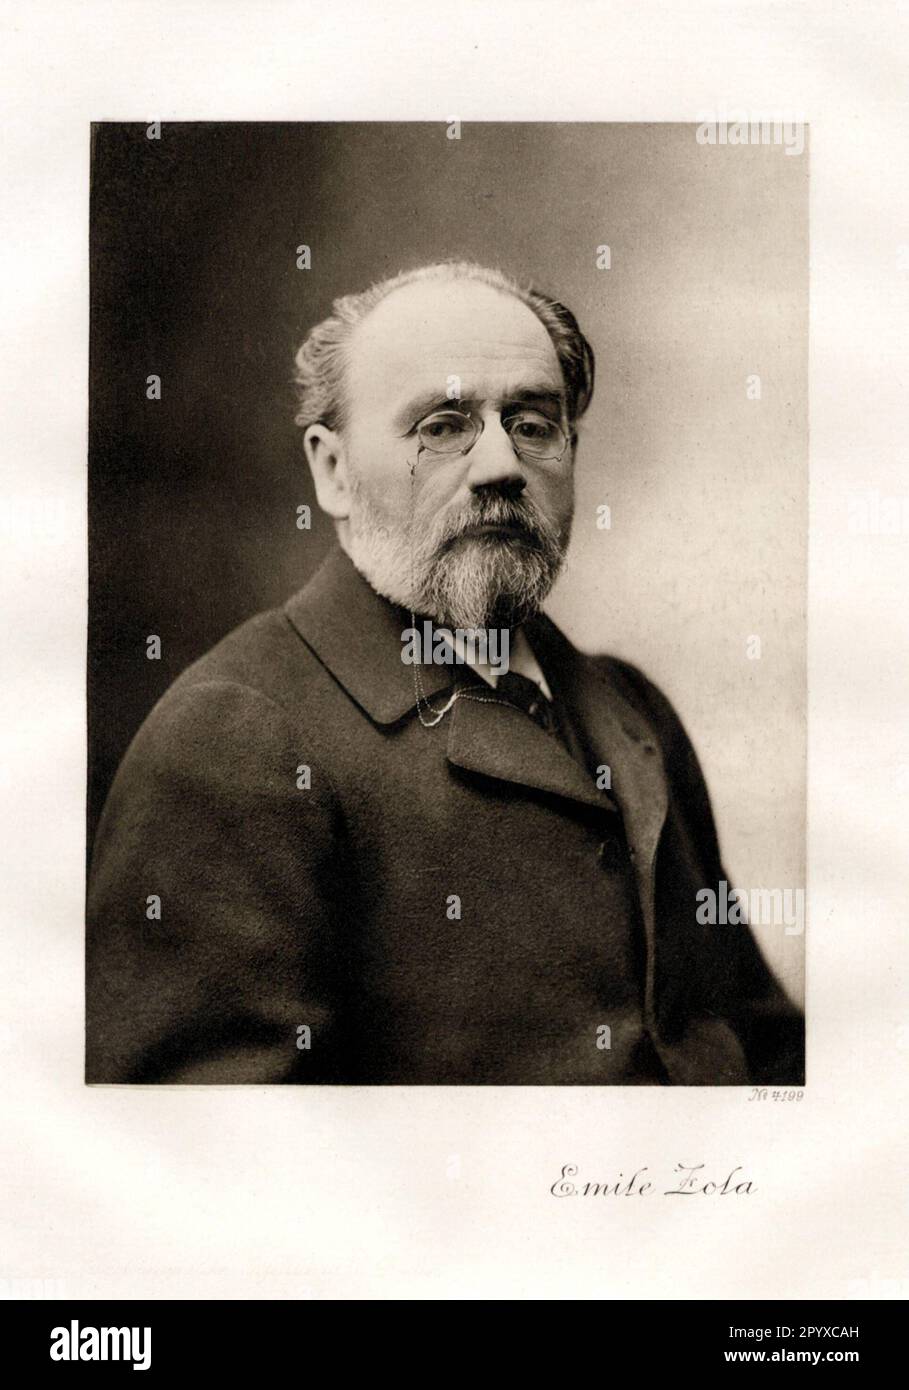 Émile Zola (1840-1902), scrittore francese. Zola è considerato il più importante rappresentante del naturalismo nella letteratura europea. Foto: Heliogravure, Corpus Imaginum, Hanfstaengl Collection. [traduzione automatica] Foto Stock